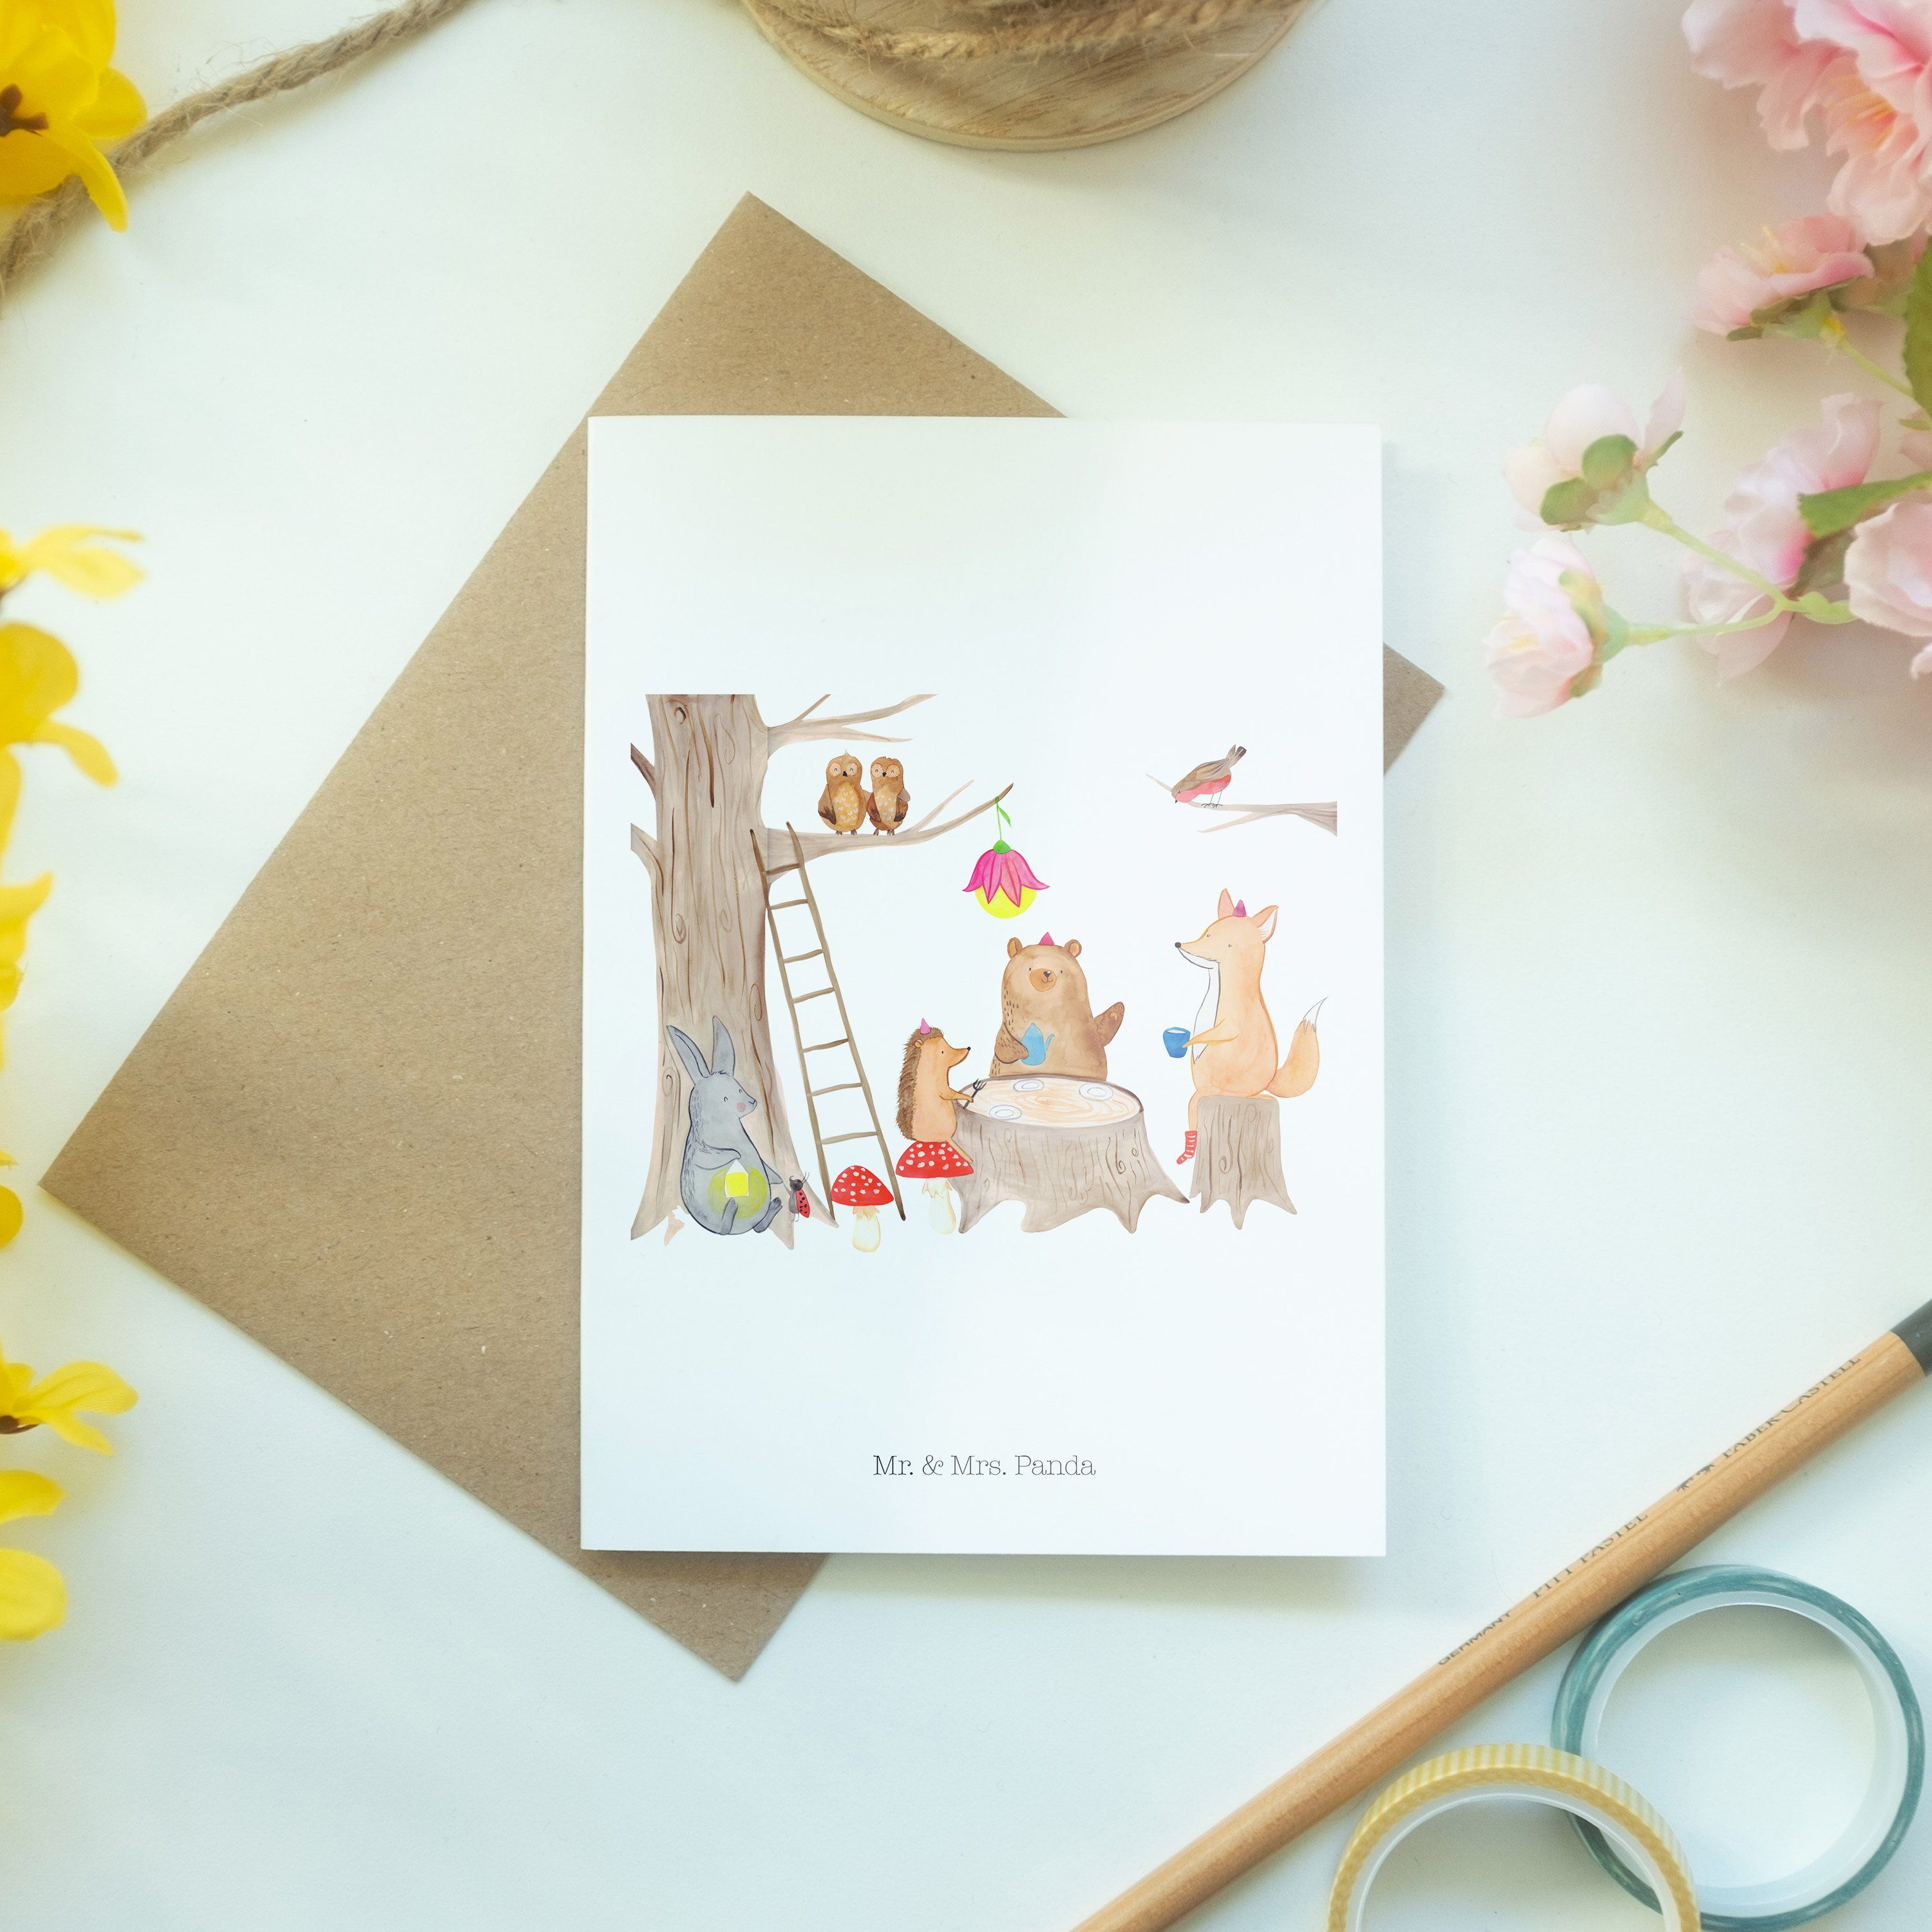 Mr. & Mrs. Panda Weiß Picknick Waldtiere - Glückwunschkarte, - Geschenk, Grußkarte Eichhörnchen